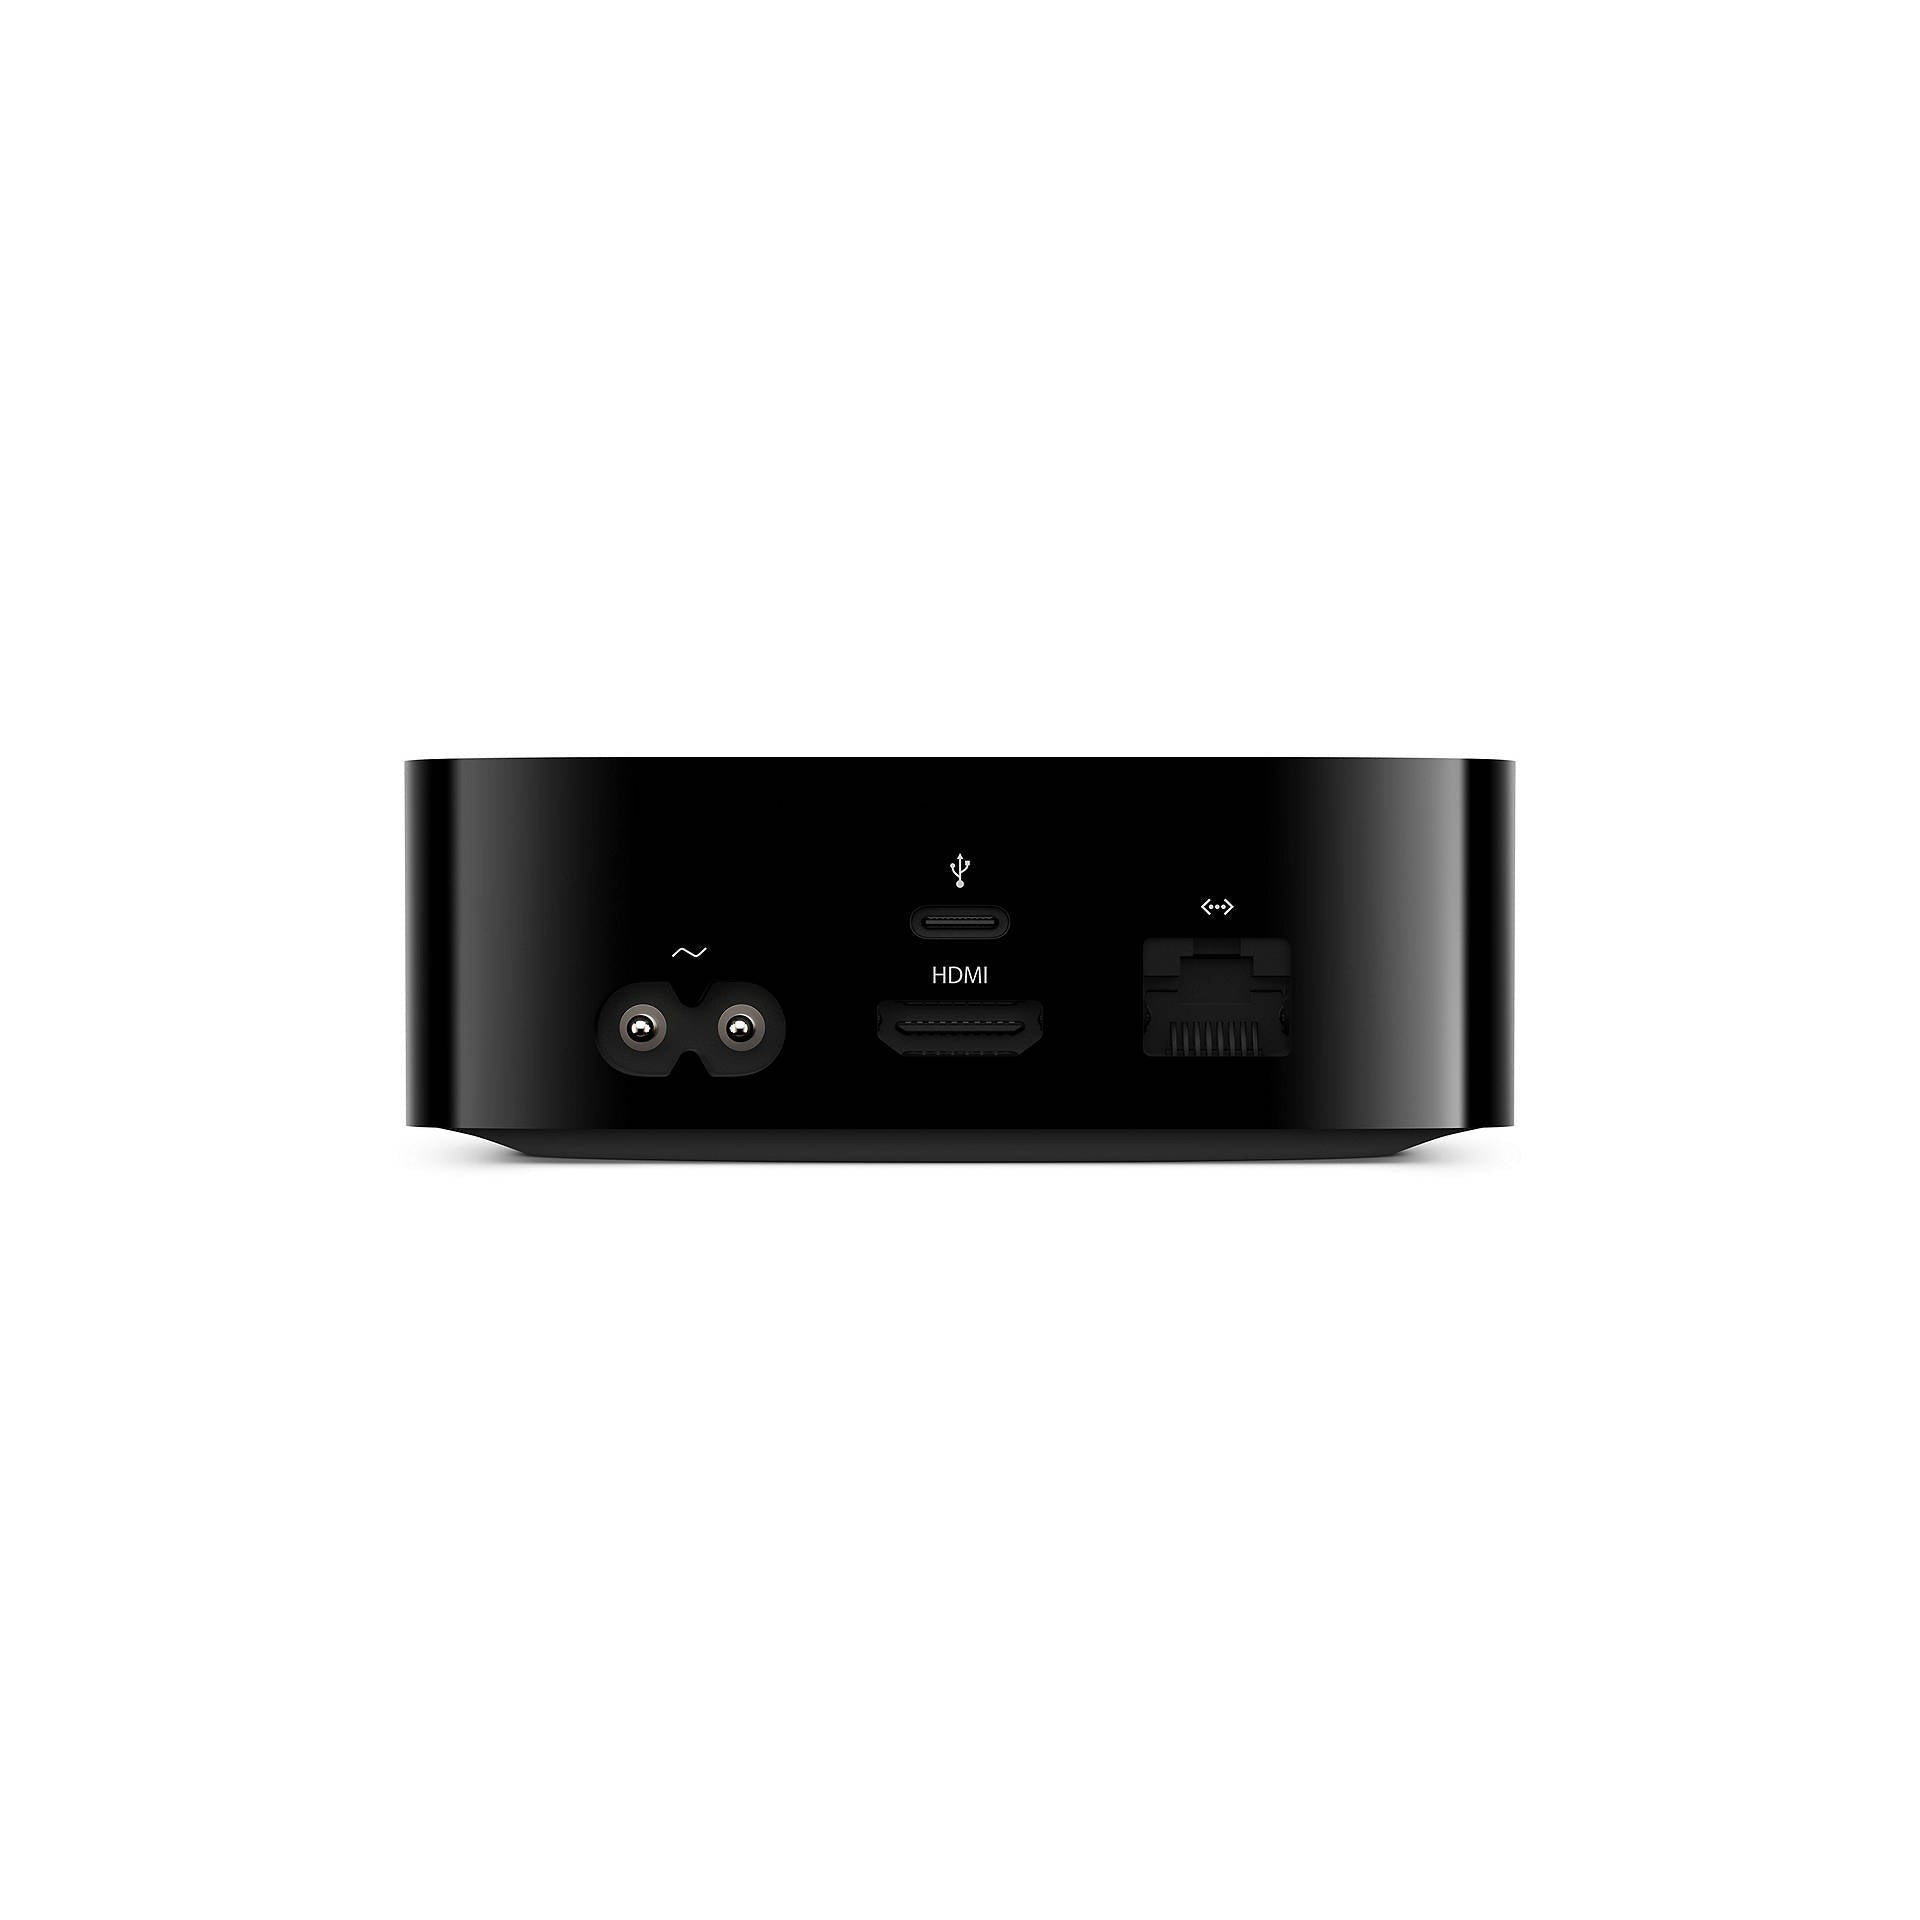 Apple TV HD 2021 32GB A1625 (MHY93B/A) - Black - Refurbished Good